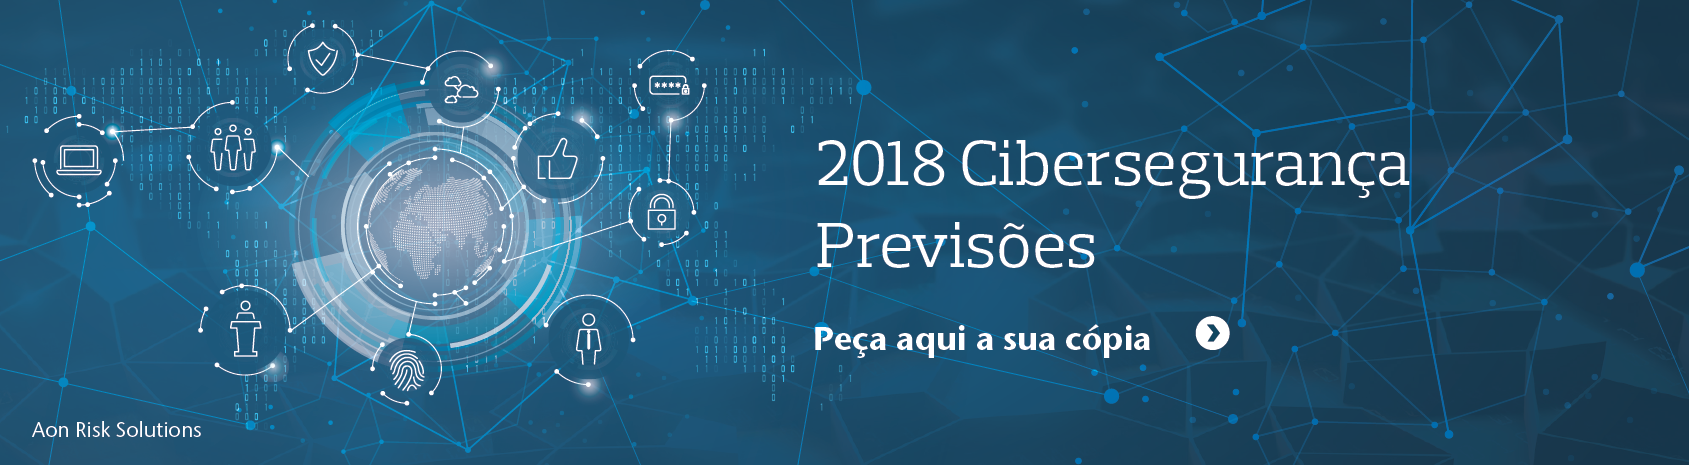 Cibersegurança Previsões 2018 Aon Cyber Security